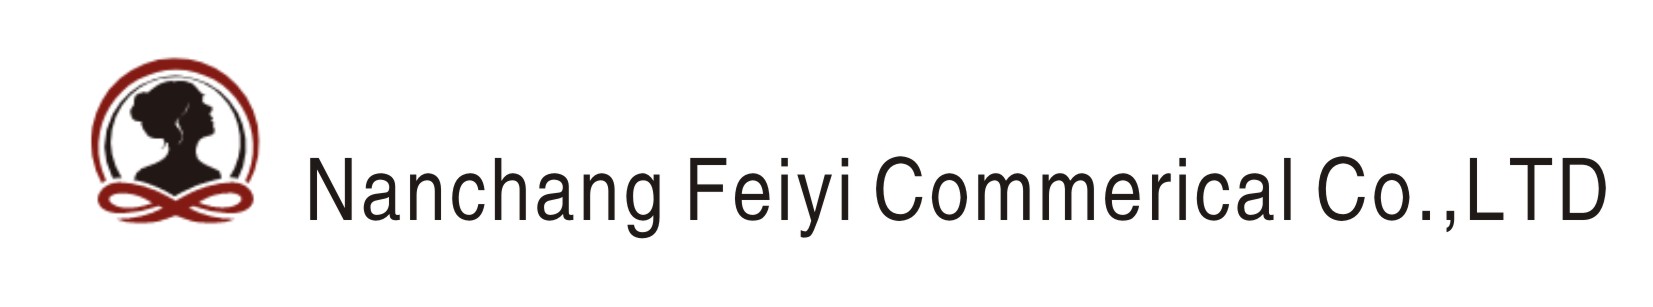 Nanchang Feiyi Commerical Co.,LTD